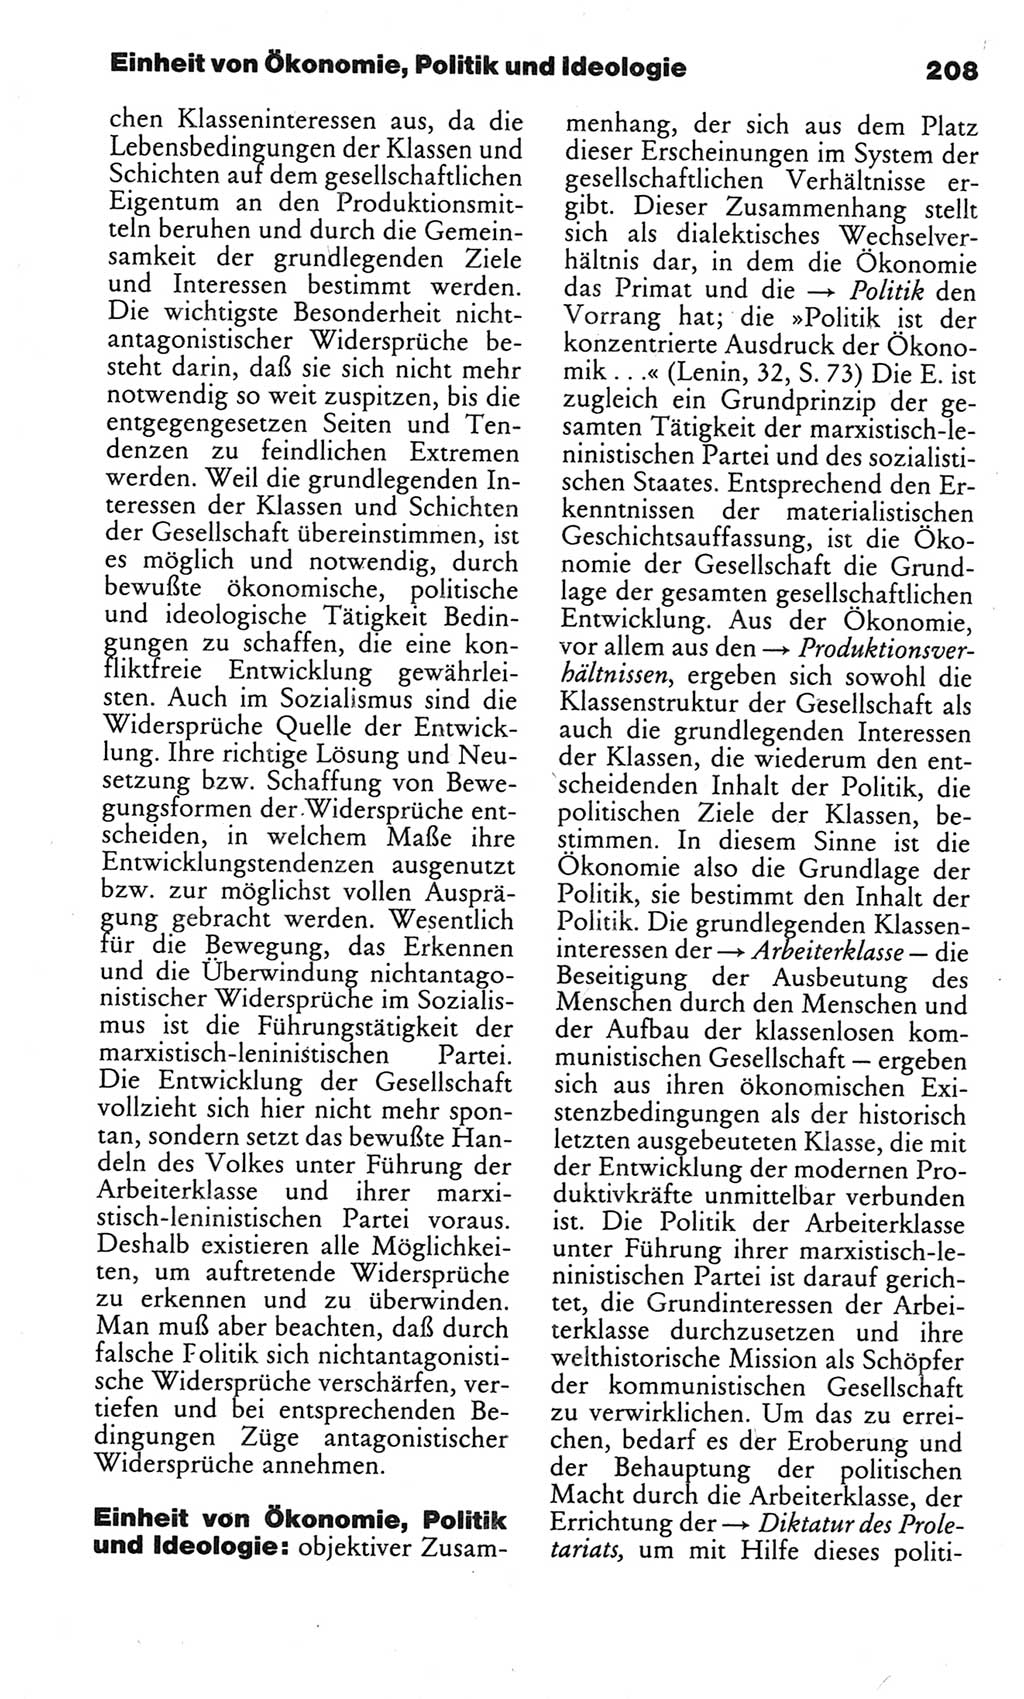 Kleines politisches Wörterbuch [Deutsche Demokratische Republik (DDR)] 1983, Seite 208 (Kl. pol. Wb. DDR 1983, S. 208)